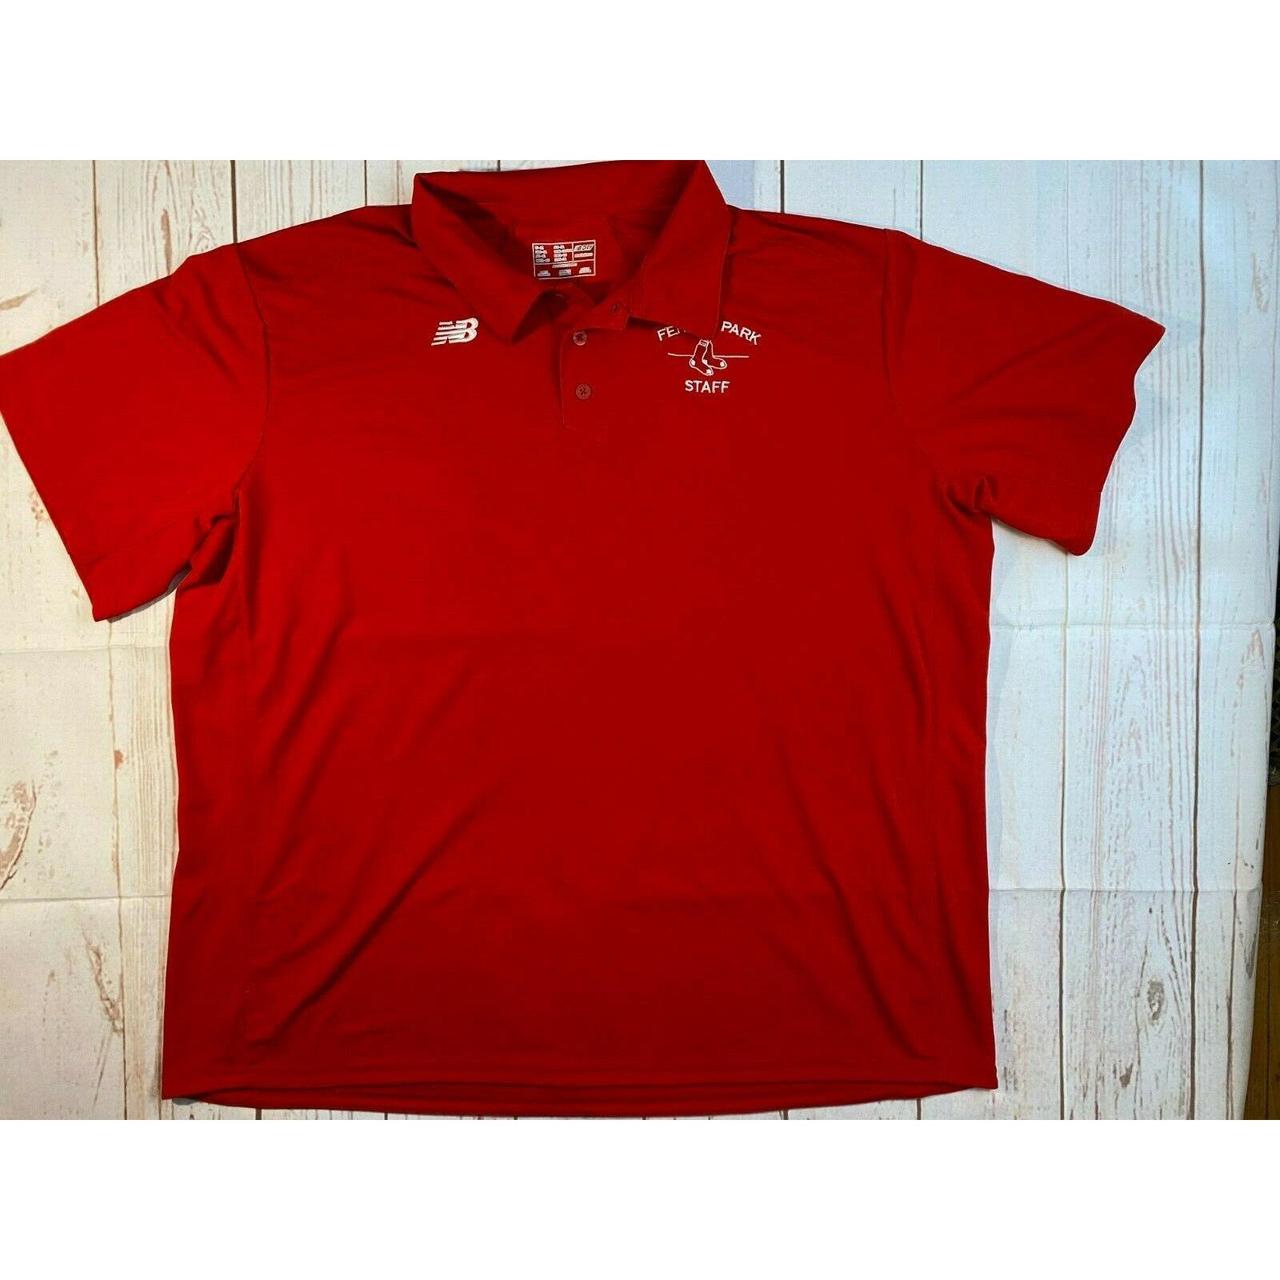 Red sox womens jersey type shirt - Depop